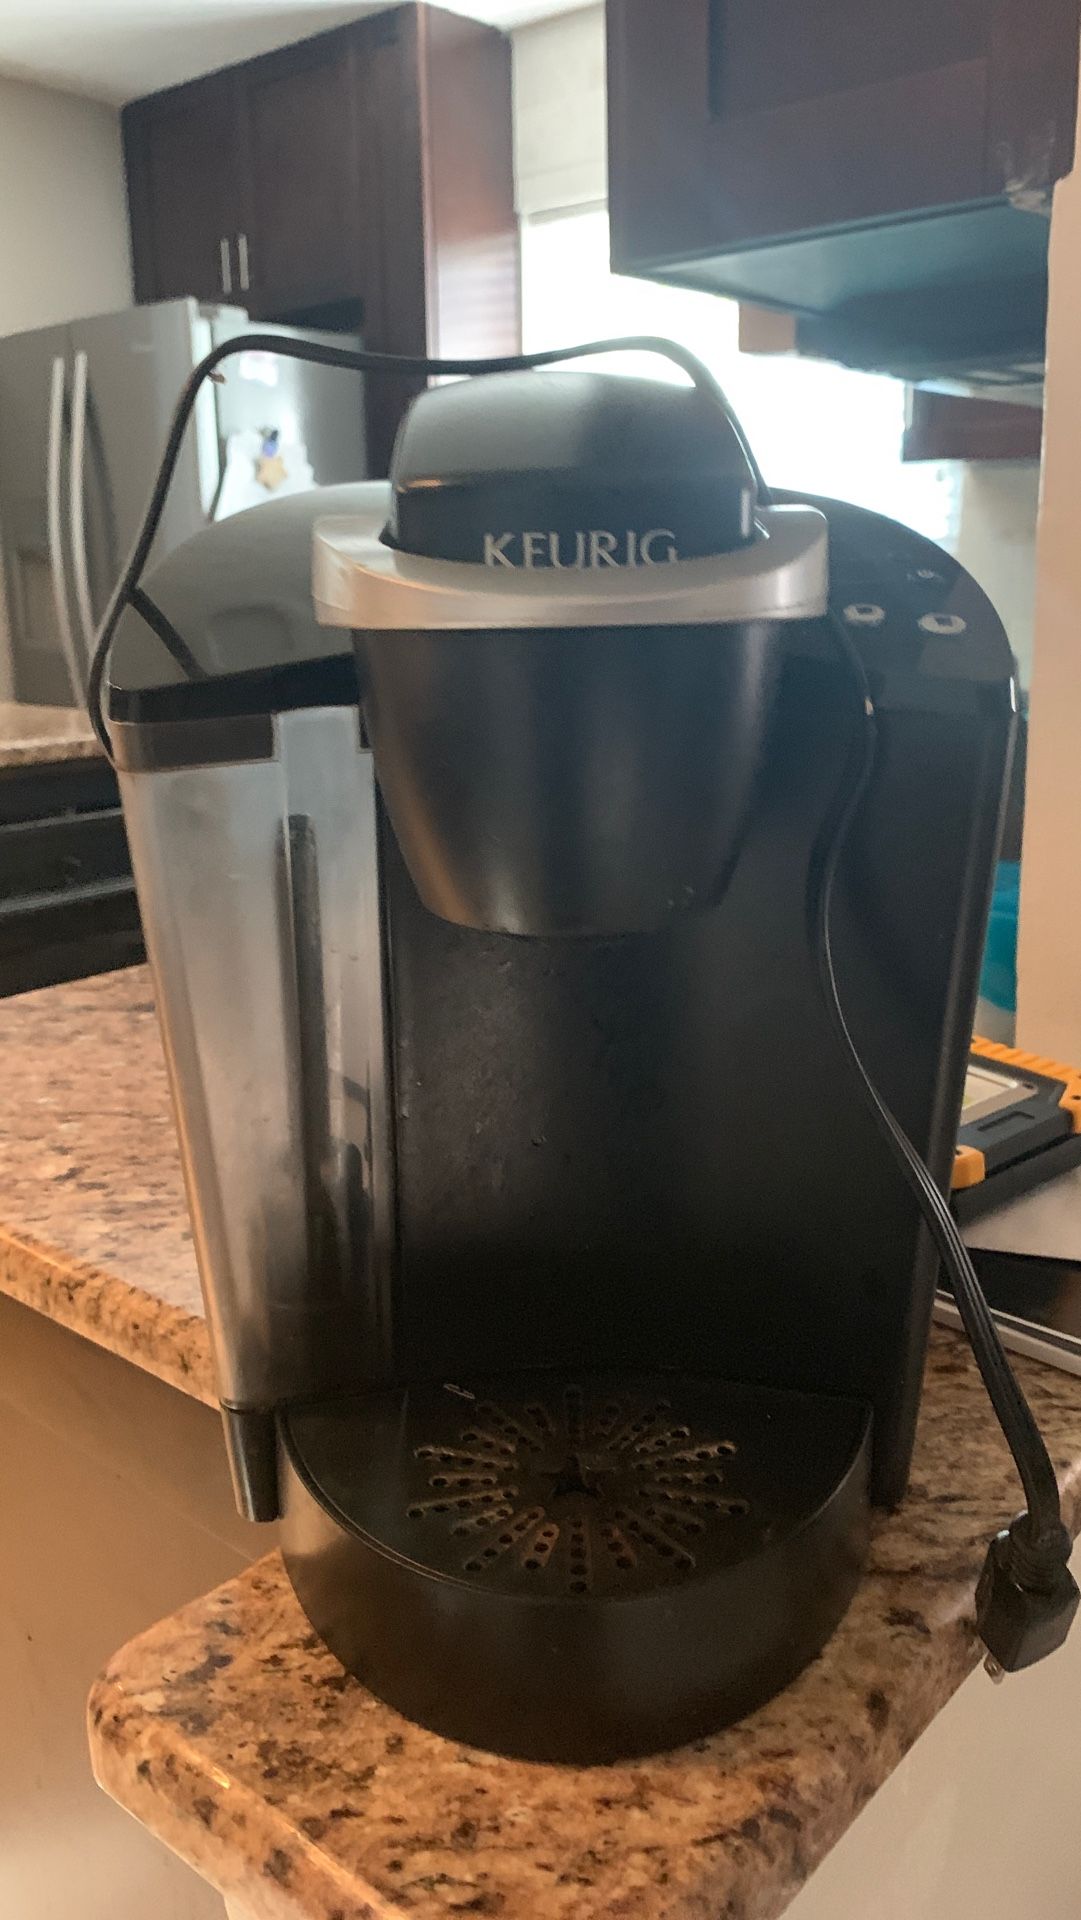 Keurig coffee maker used